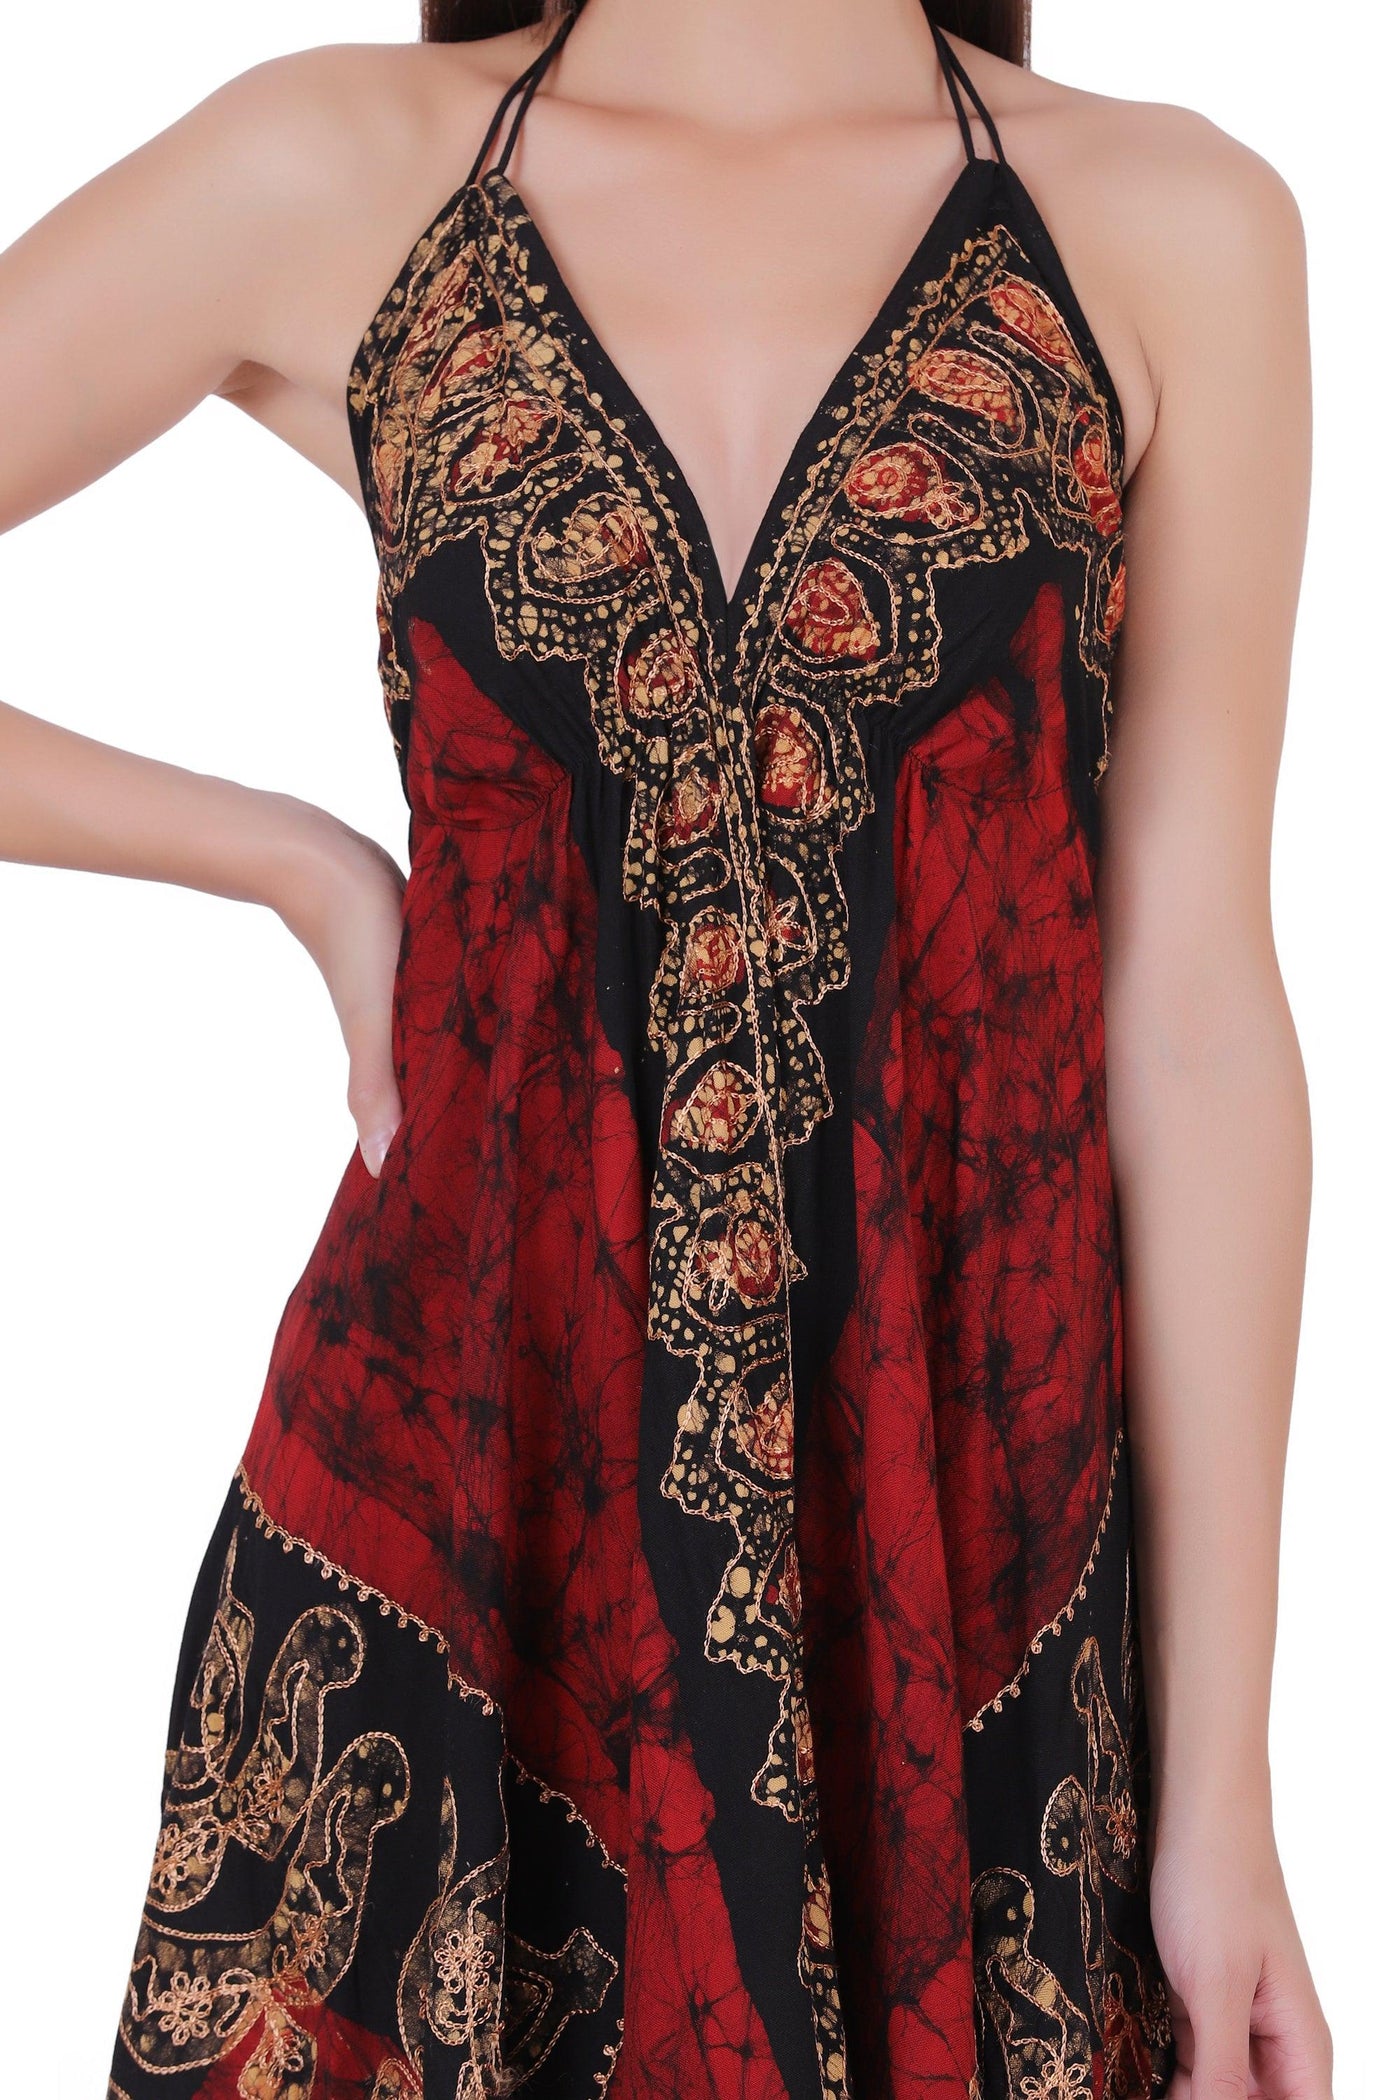 Batik Scarf Dress Elastic Back 1458  - Advance Apparels Inc